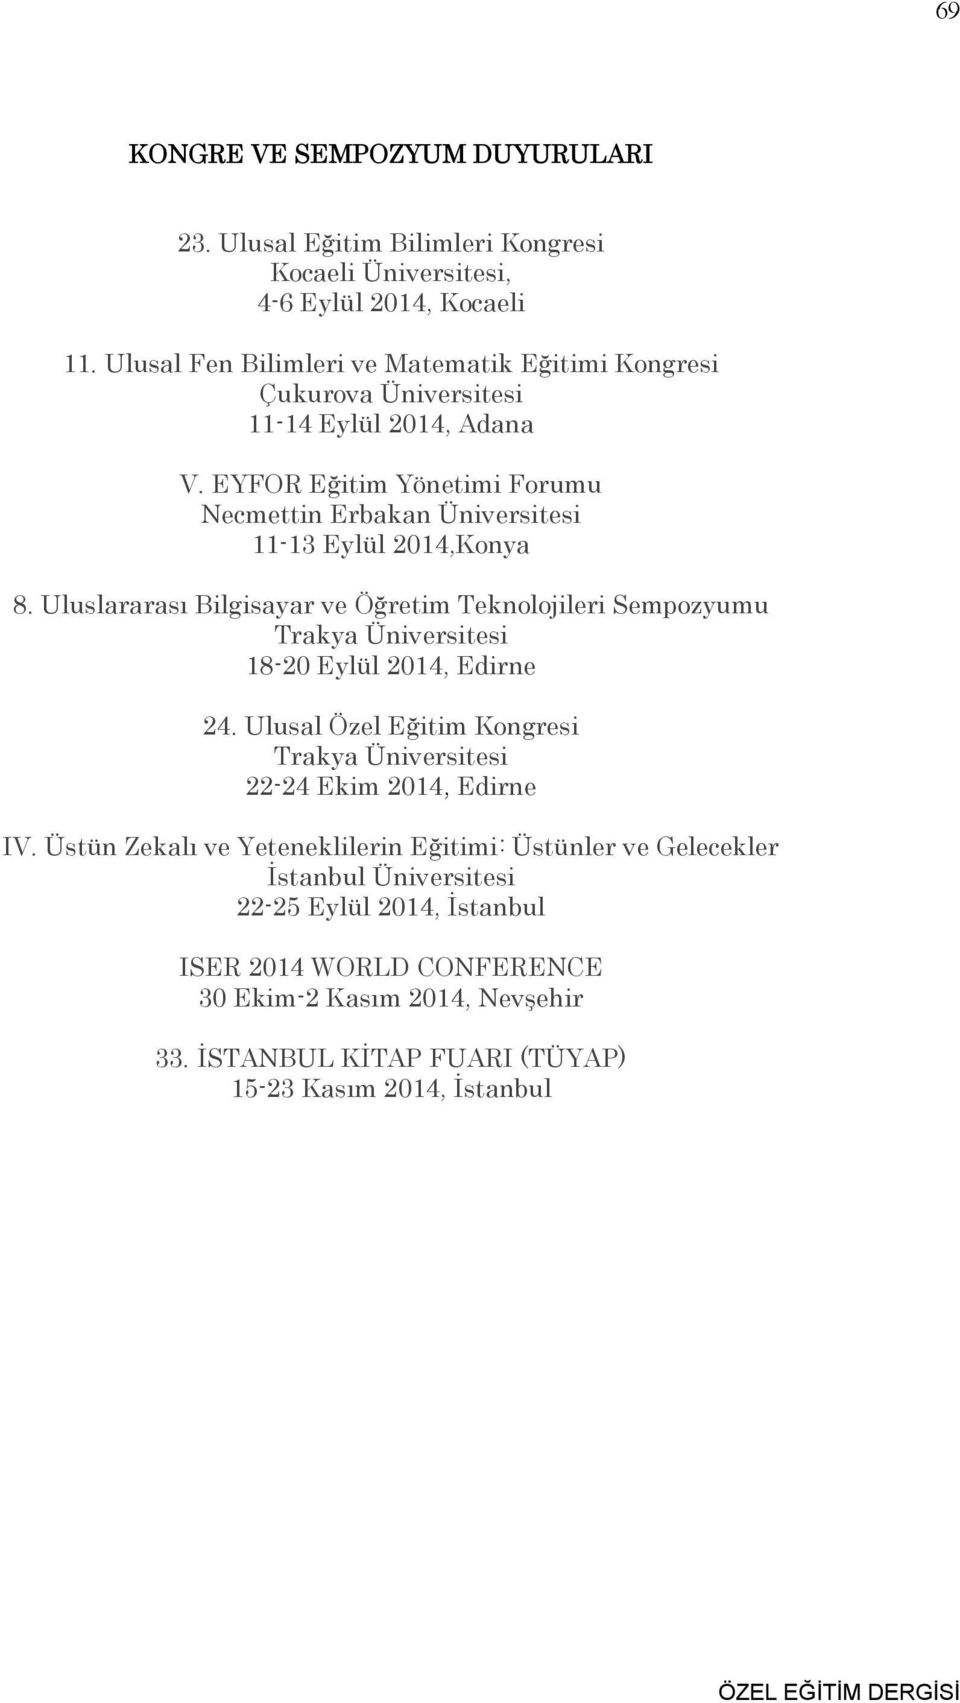 Uluslararası Bilgisayar ve Öğretim Teknolojileri Sempozyumu Trakya Üniversitesi 18-20 Eylül 2014, Edirne 24. Ulusal Özel Eğitim Kongresi Trakya Üniversitesi 22-24 Ekim 2014, Edirne IV.